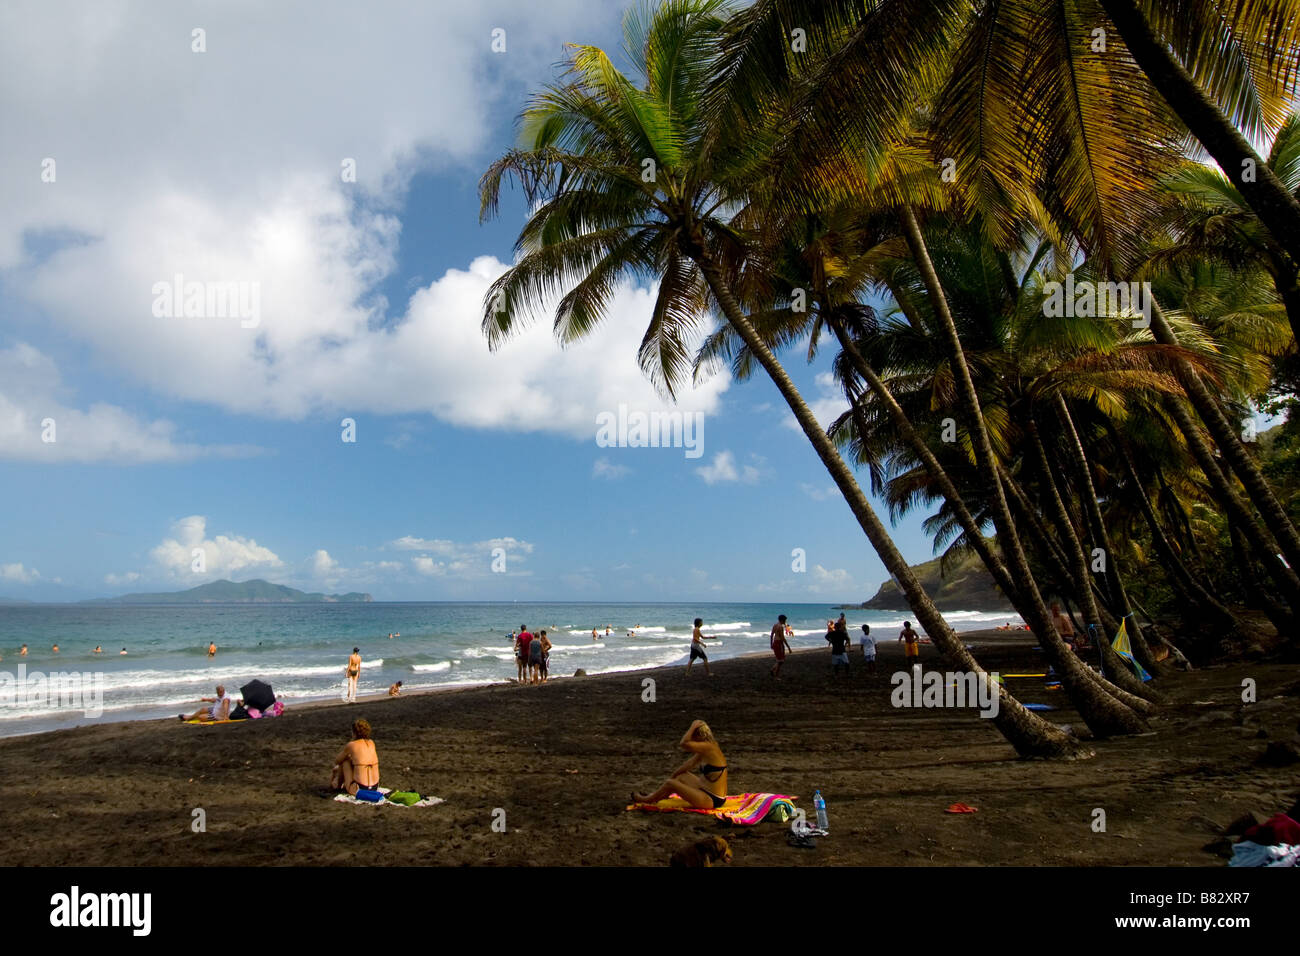 Au Nicaragua, la plage de sable noir volcanique, palmiers, paradis, les gens at beach Banque D'Images